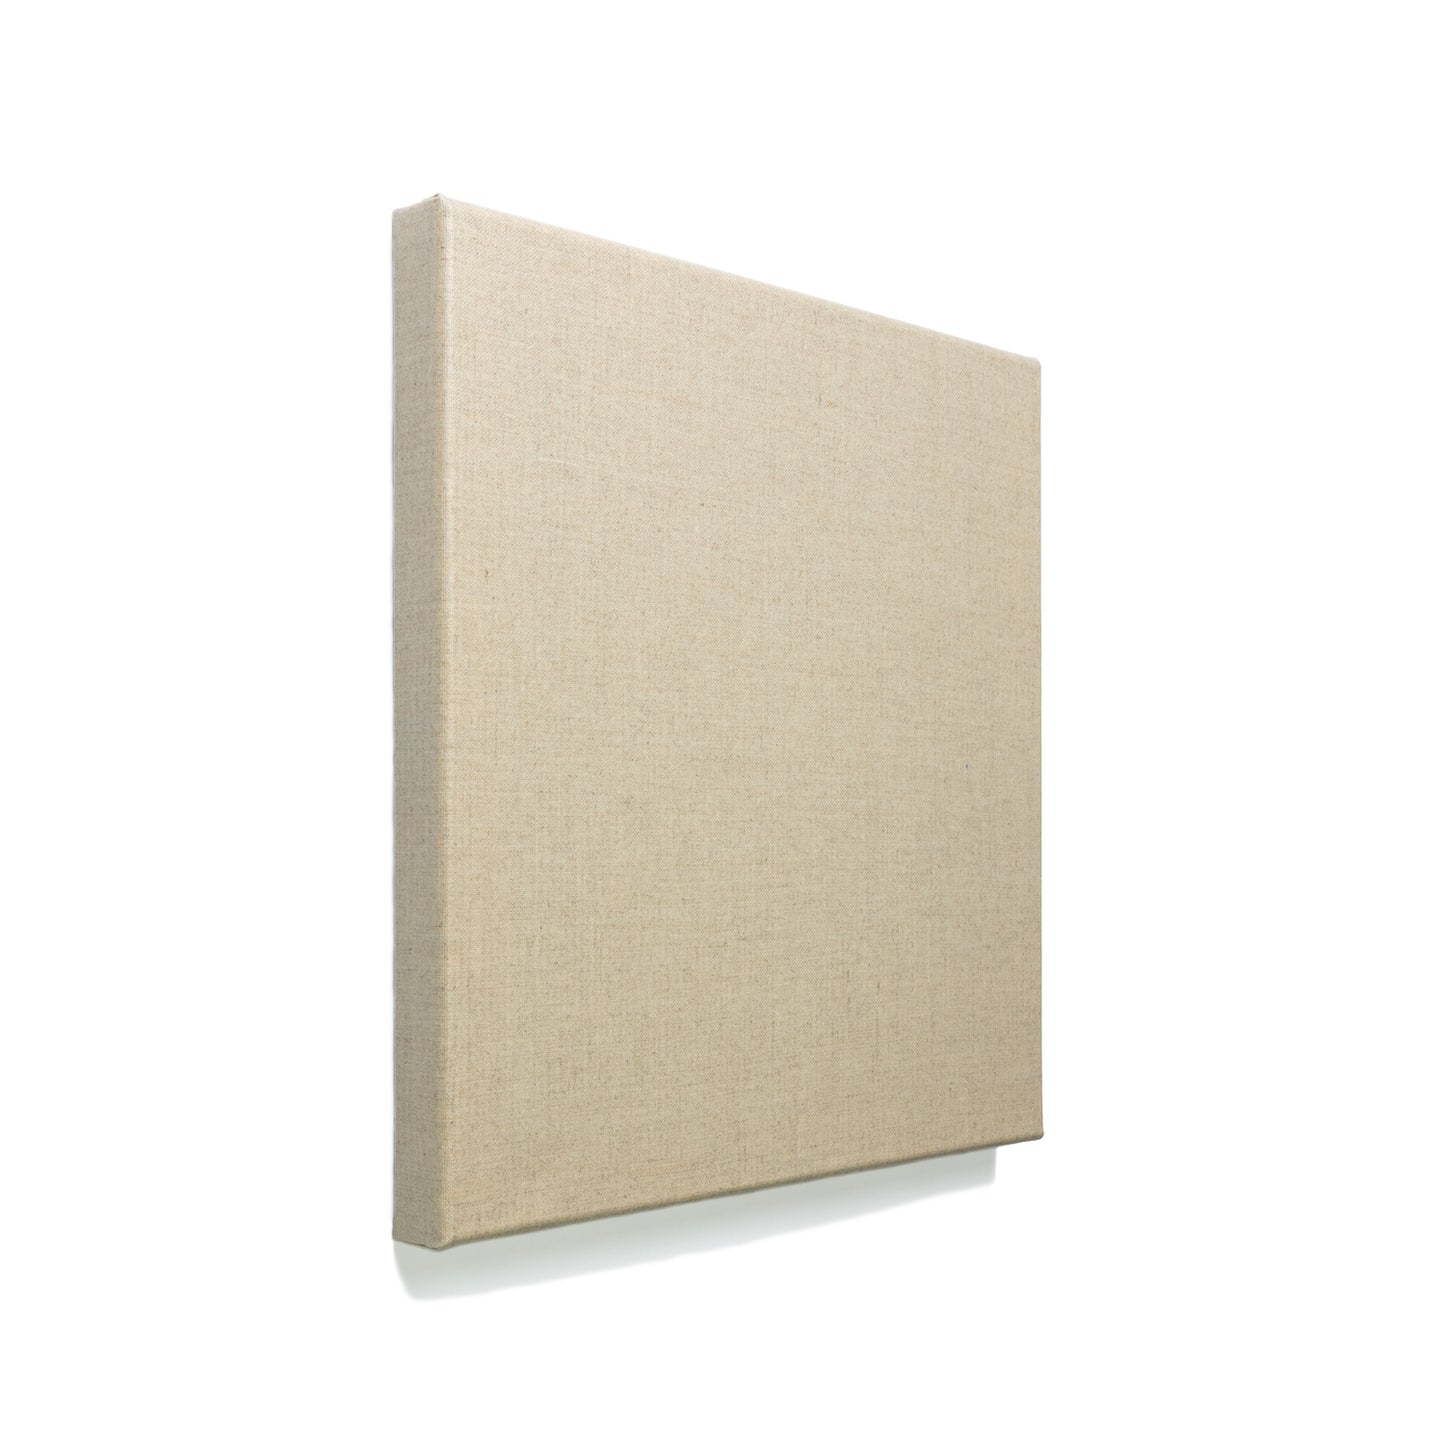 Pre-Gessoed Linen Canvas Case Packs